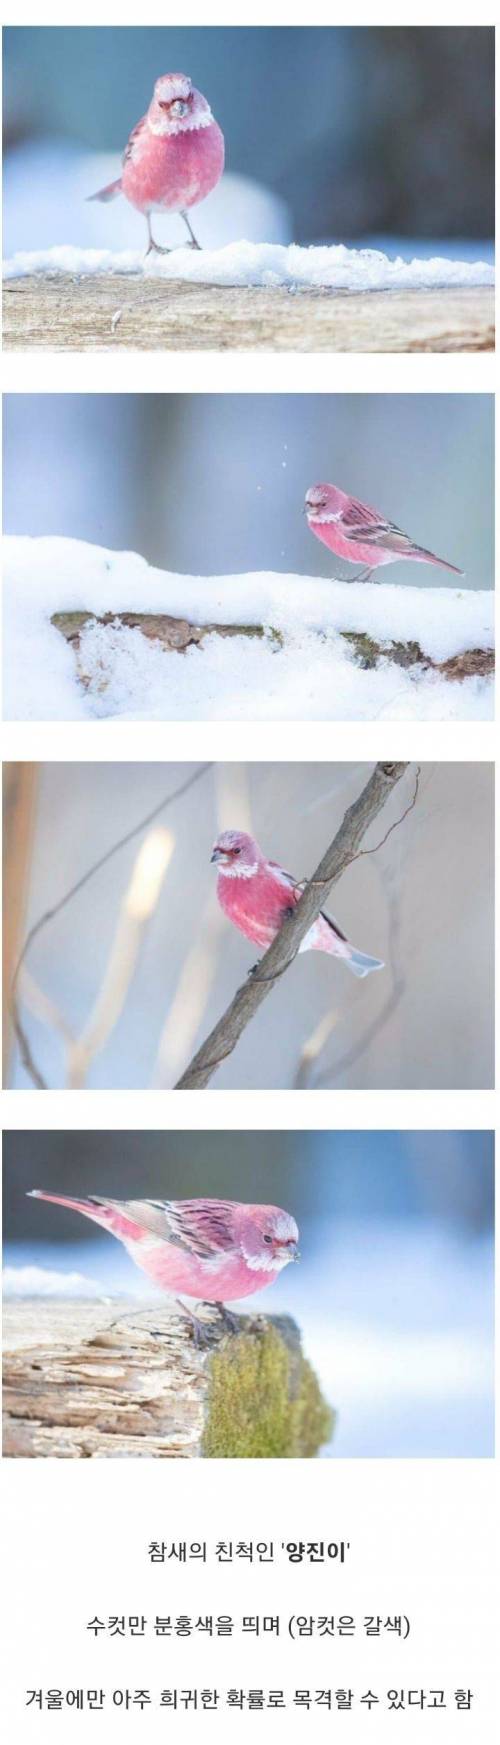 1 한국에서 볼 수 있는 가장 아름다운 새.jpg